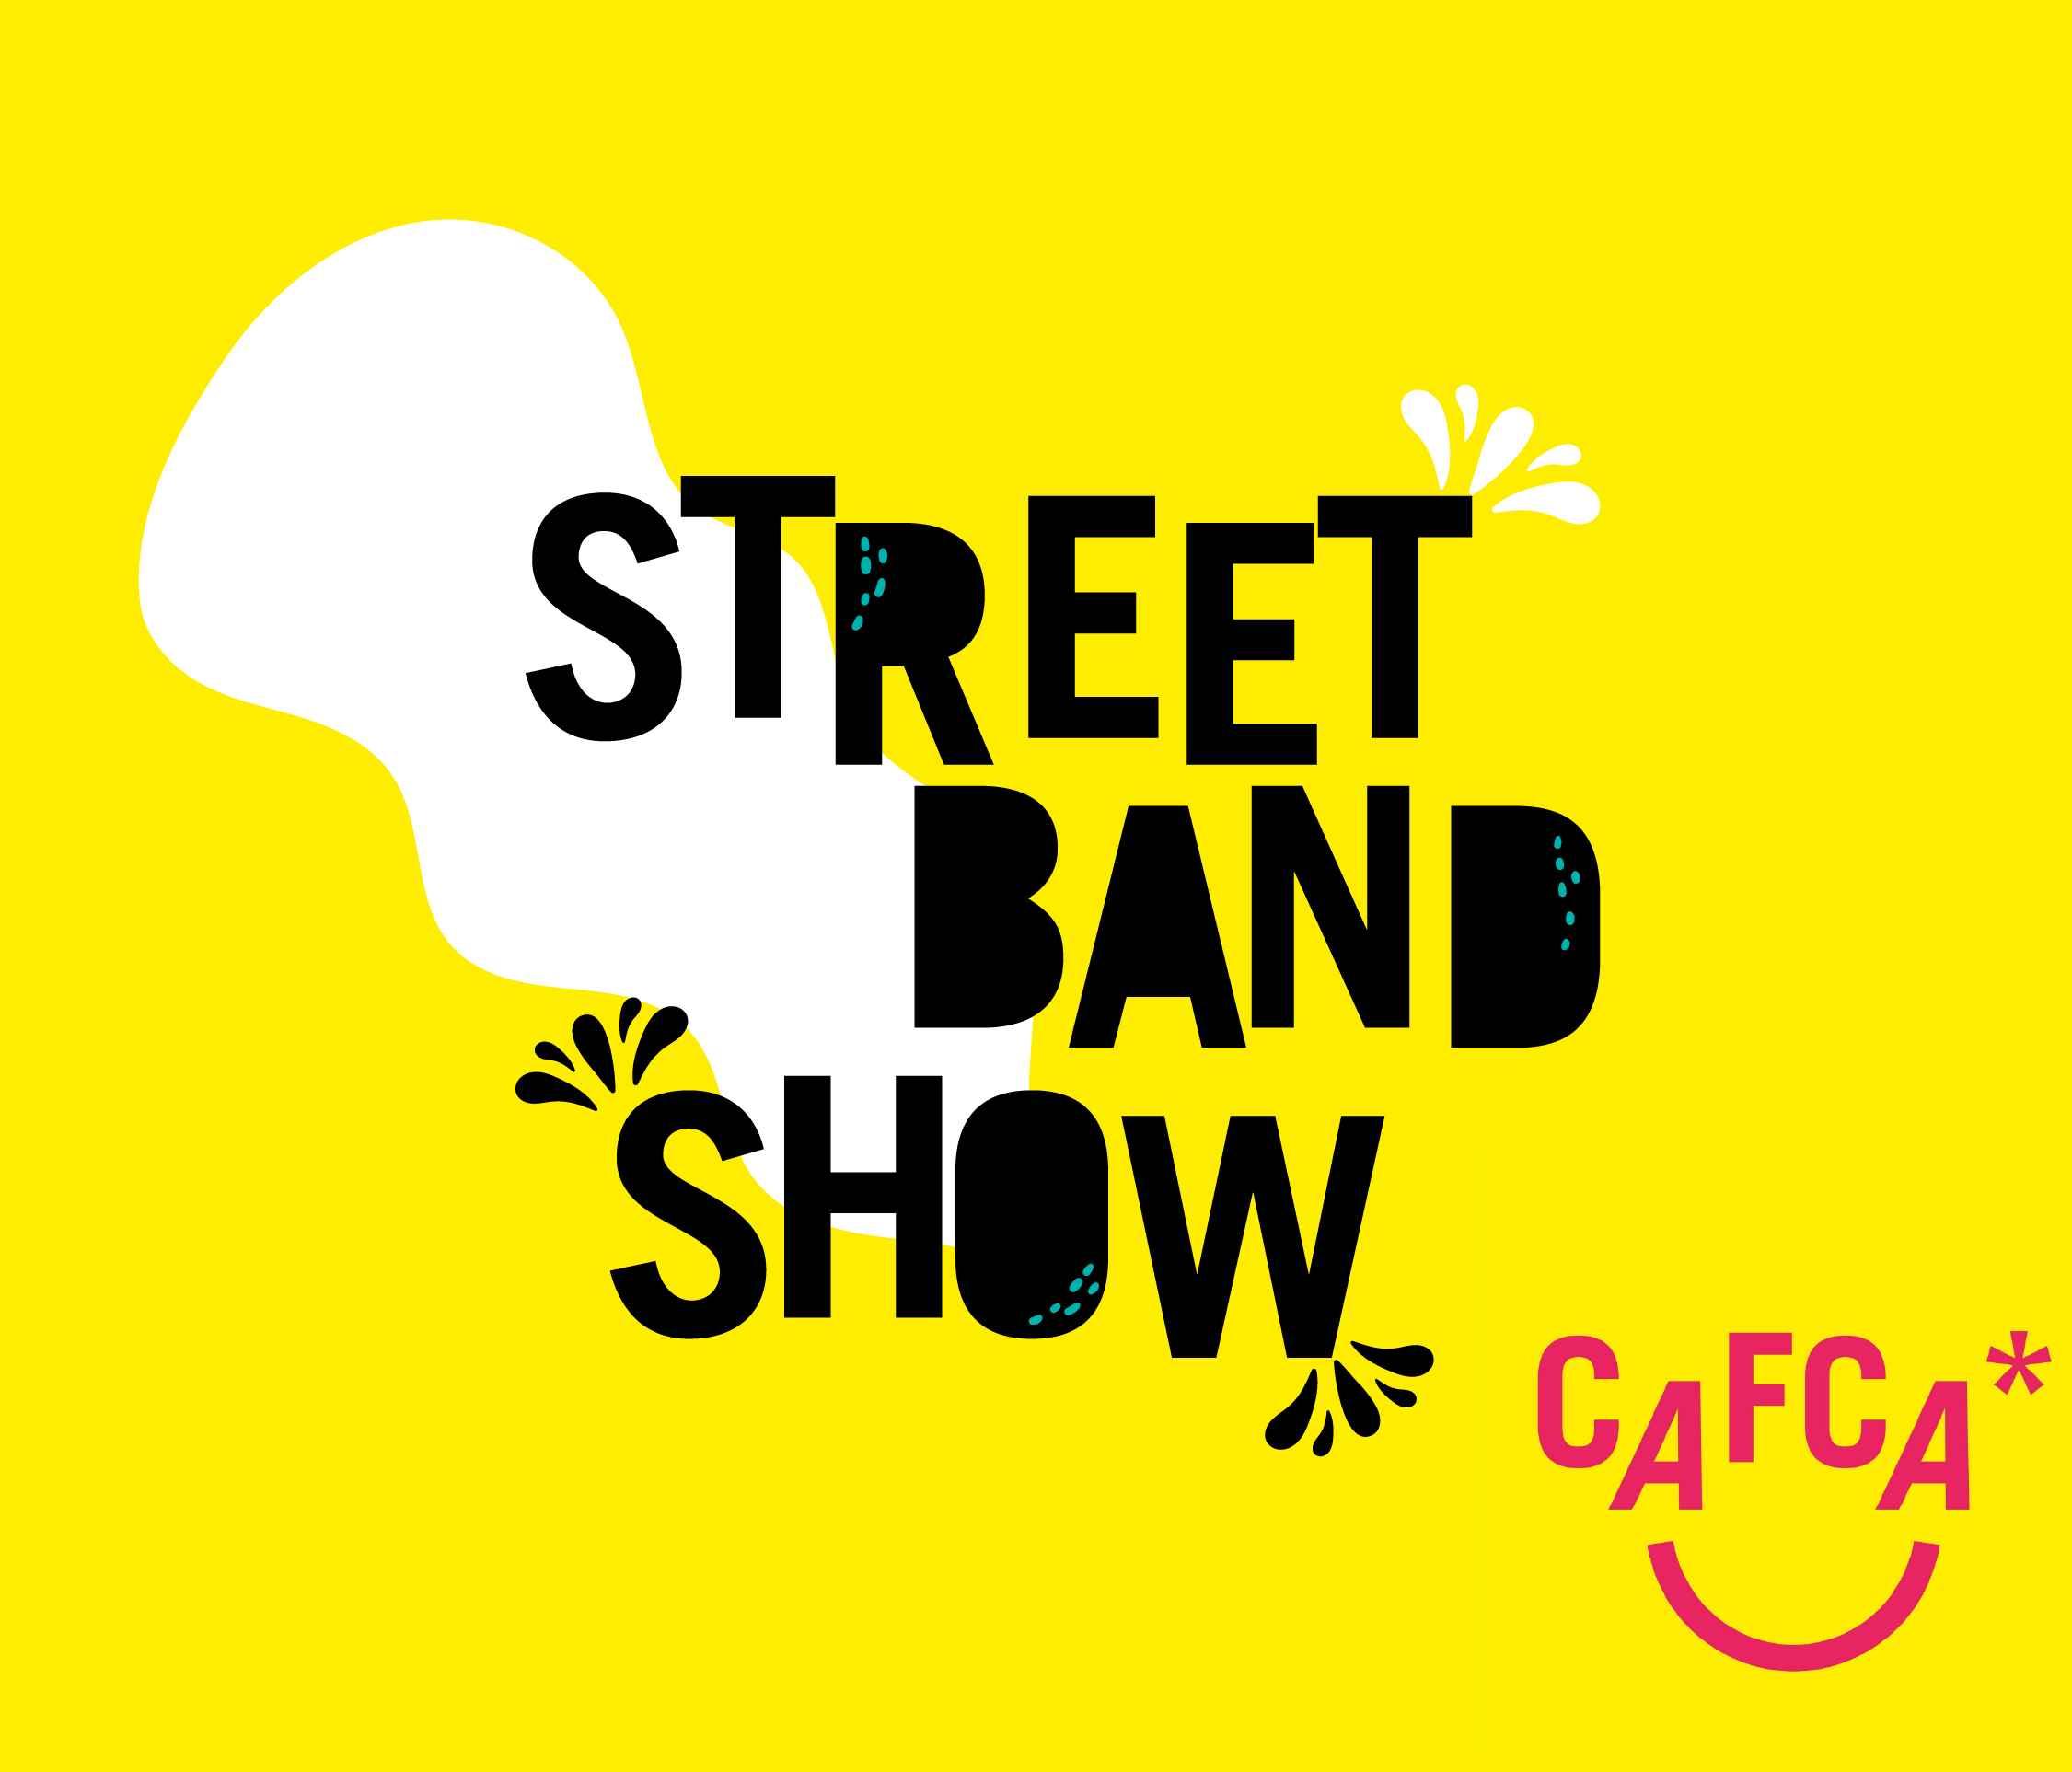 Street Band Show - Cafca 24